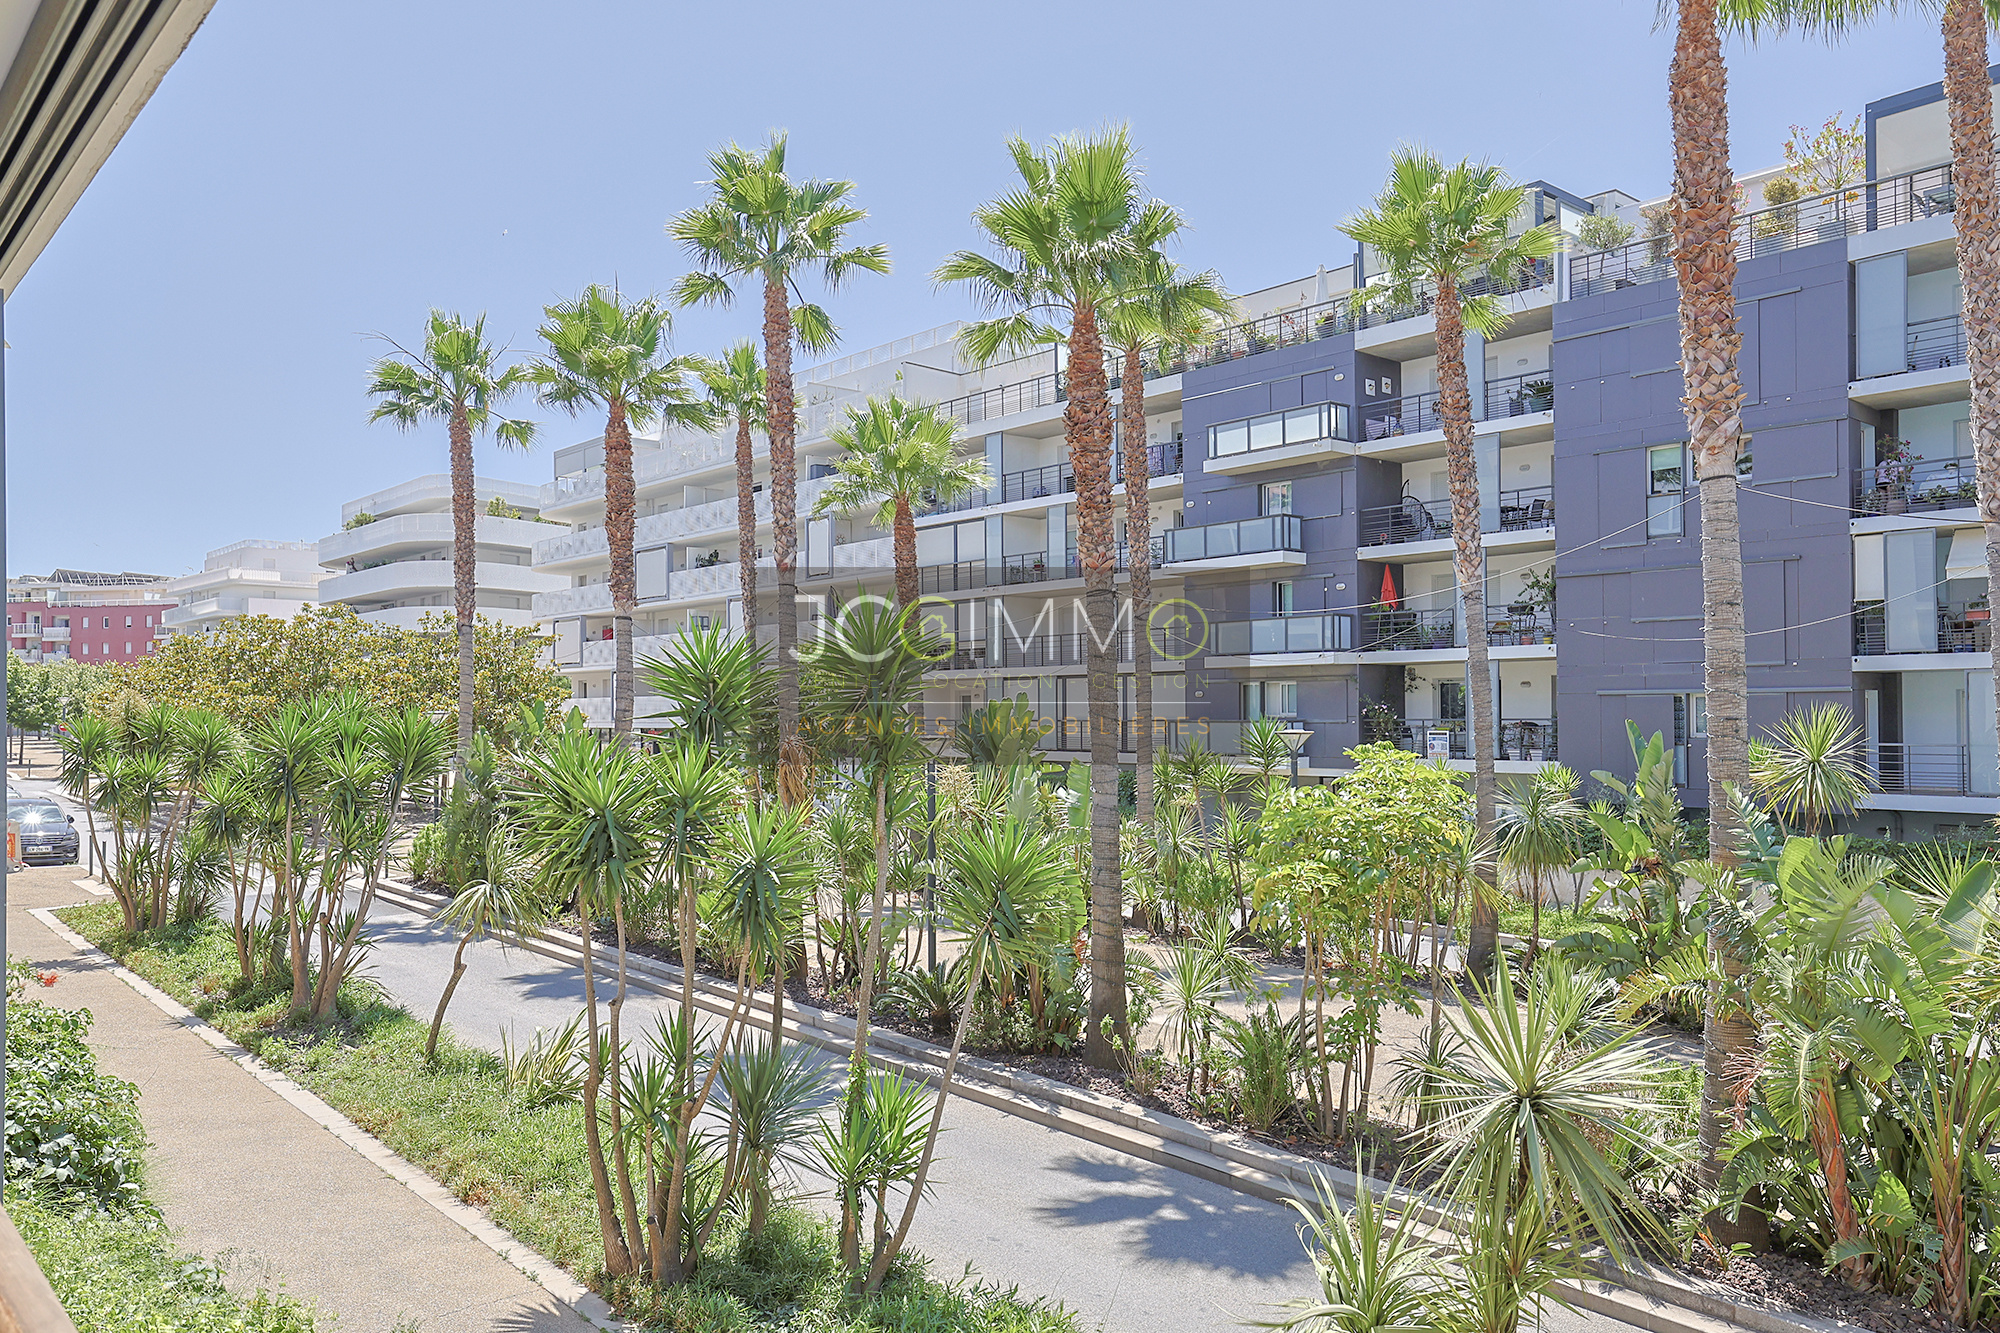 Vente Appartement 34m² 1 Pièce à La Seyne-sur-Mer (83500) - Jcg Immobilier